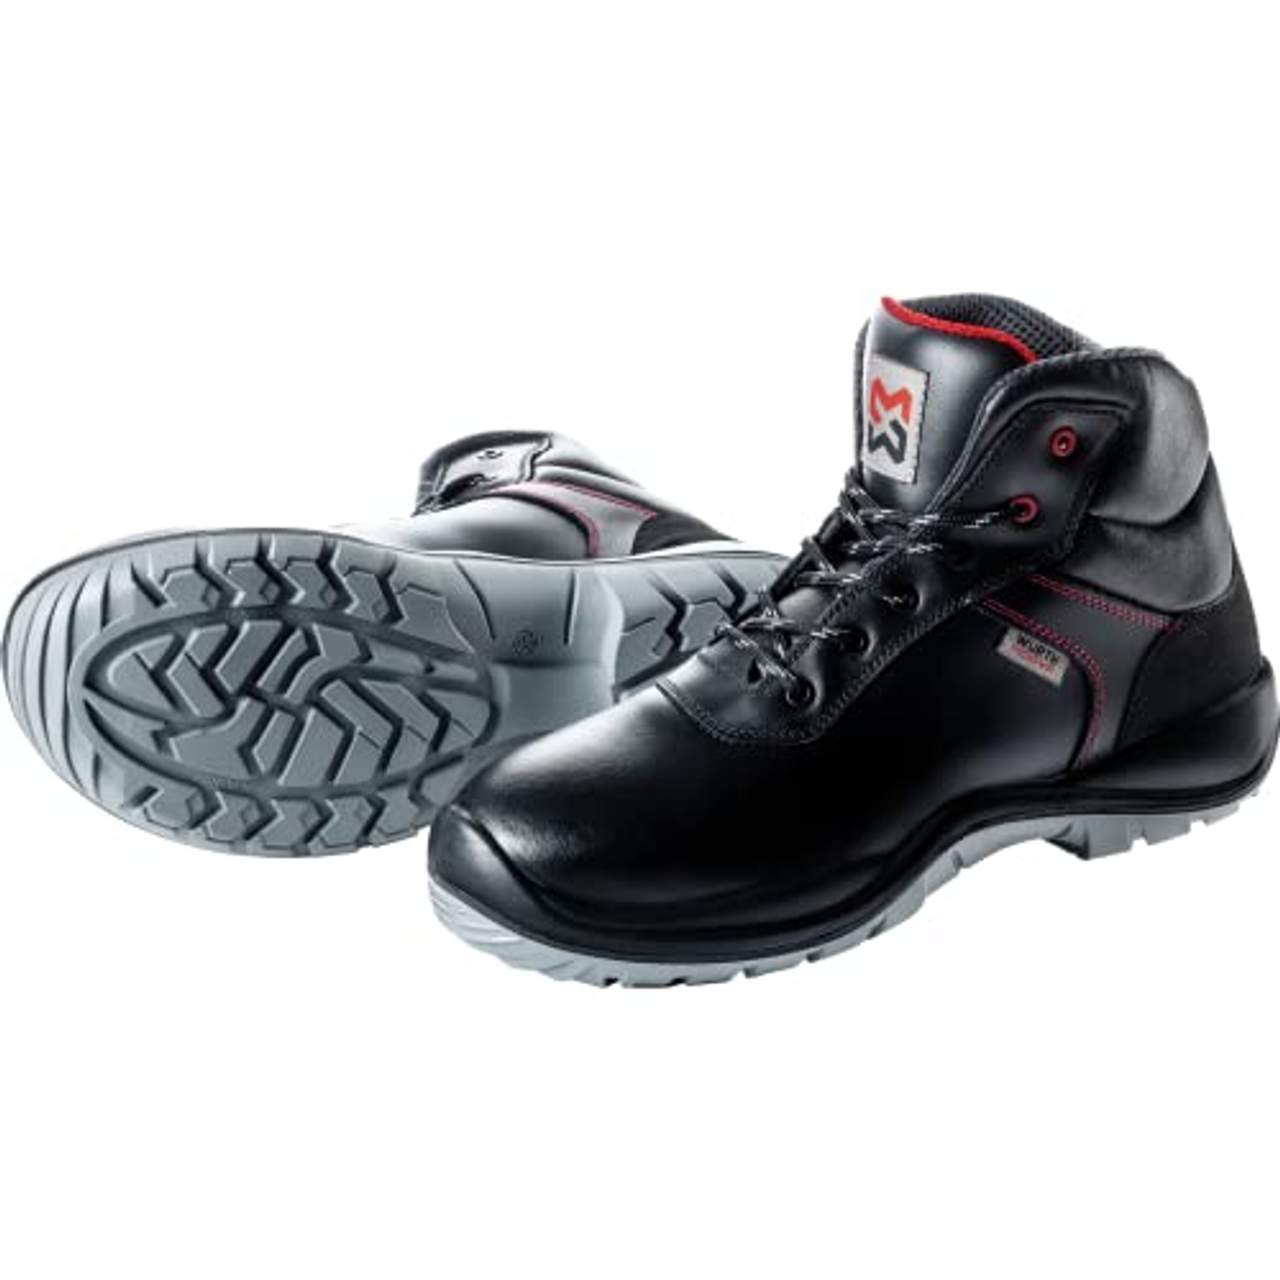 WÜRTH MODYF Sicherheitsstiefel S3 SRC Eco schwarz: Der zertifizierte Schuh ist in Größe